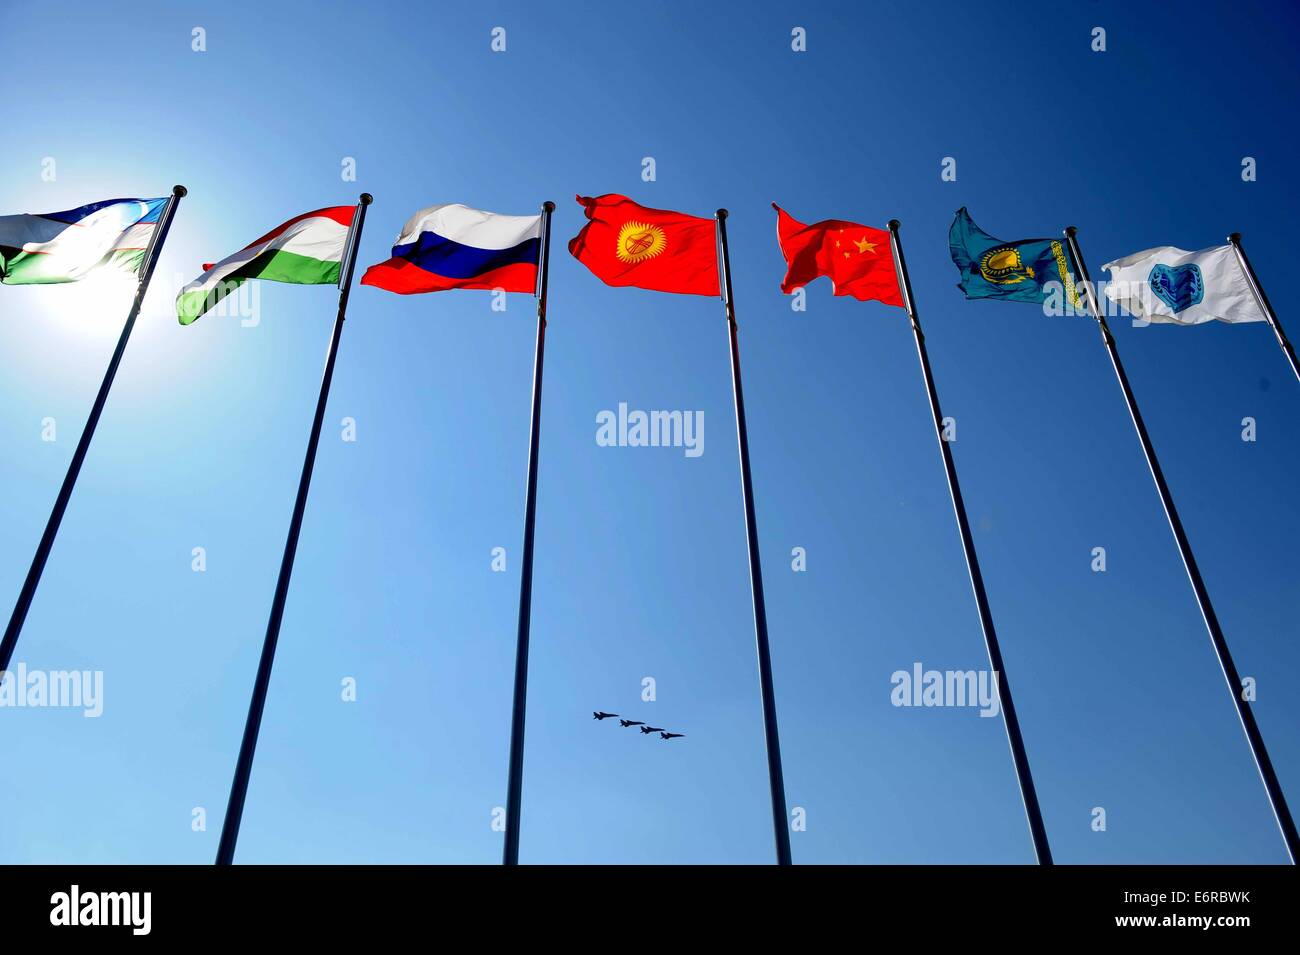 Zhurihe, Innere Mongolei, China. 29. August 2014. Flugzeuge fliegen über Flaggen der Shanghai Cooperation Organization (SCO) Mitgliedsländer bei der Abschlussfeier der Friedensmission - 2014 militärische in Zhurihe, Innere Mongolei, Nordchina, 29. August 2014 bohren. Der Bohrer, mit mehr als 7.000 Mitarbeiter aus China, Russland, Kasachstan, Kirgisistan und Tadschikistan und erwartet, dass multilaterale Entscheidungsfindung zu verbessern, gemeinsame Anti-Terror-Bemühungen zu schärfen und verbessern Austausch nachrichtendienstlicher Erkenntnisse um Frieden und Stabilität zu gewährleisten. Bildnachweis: Xinhua/Alamy Live-Nachrichten Stockfoto